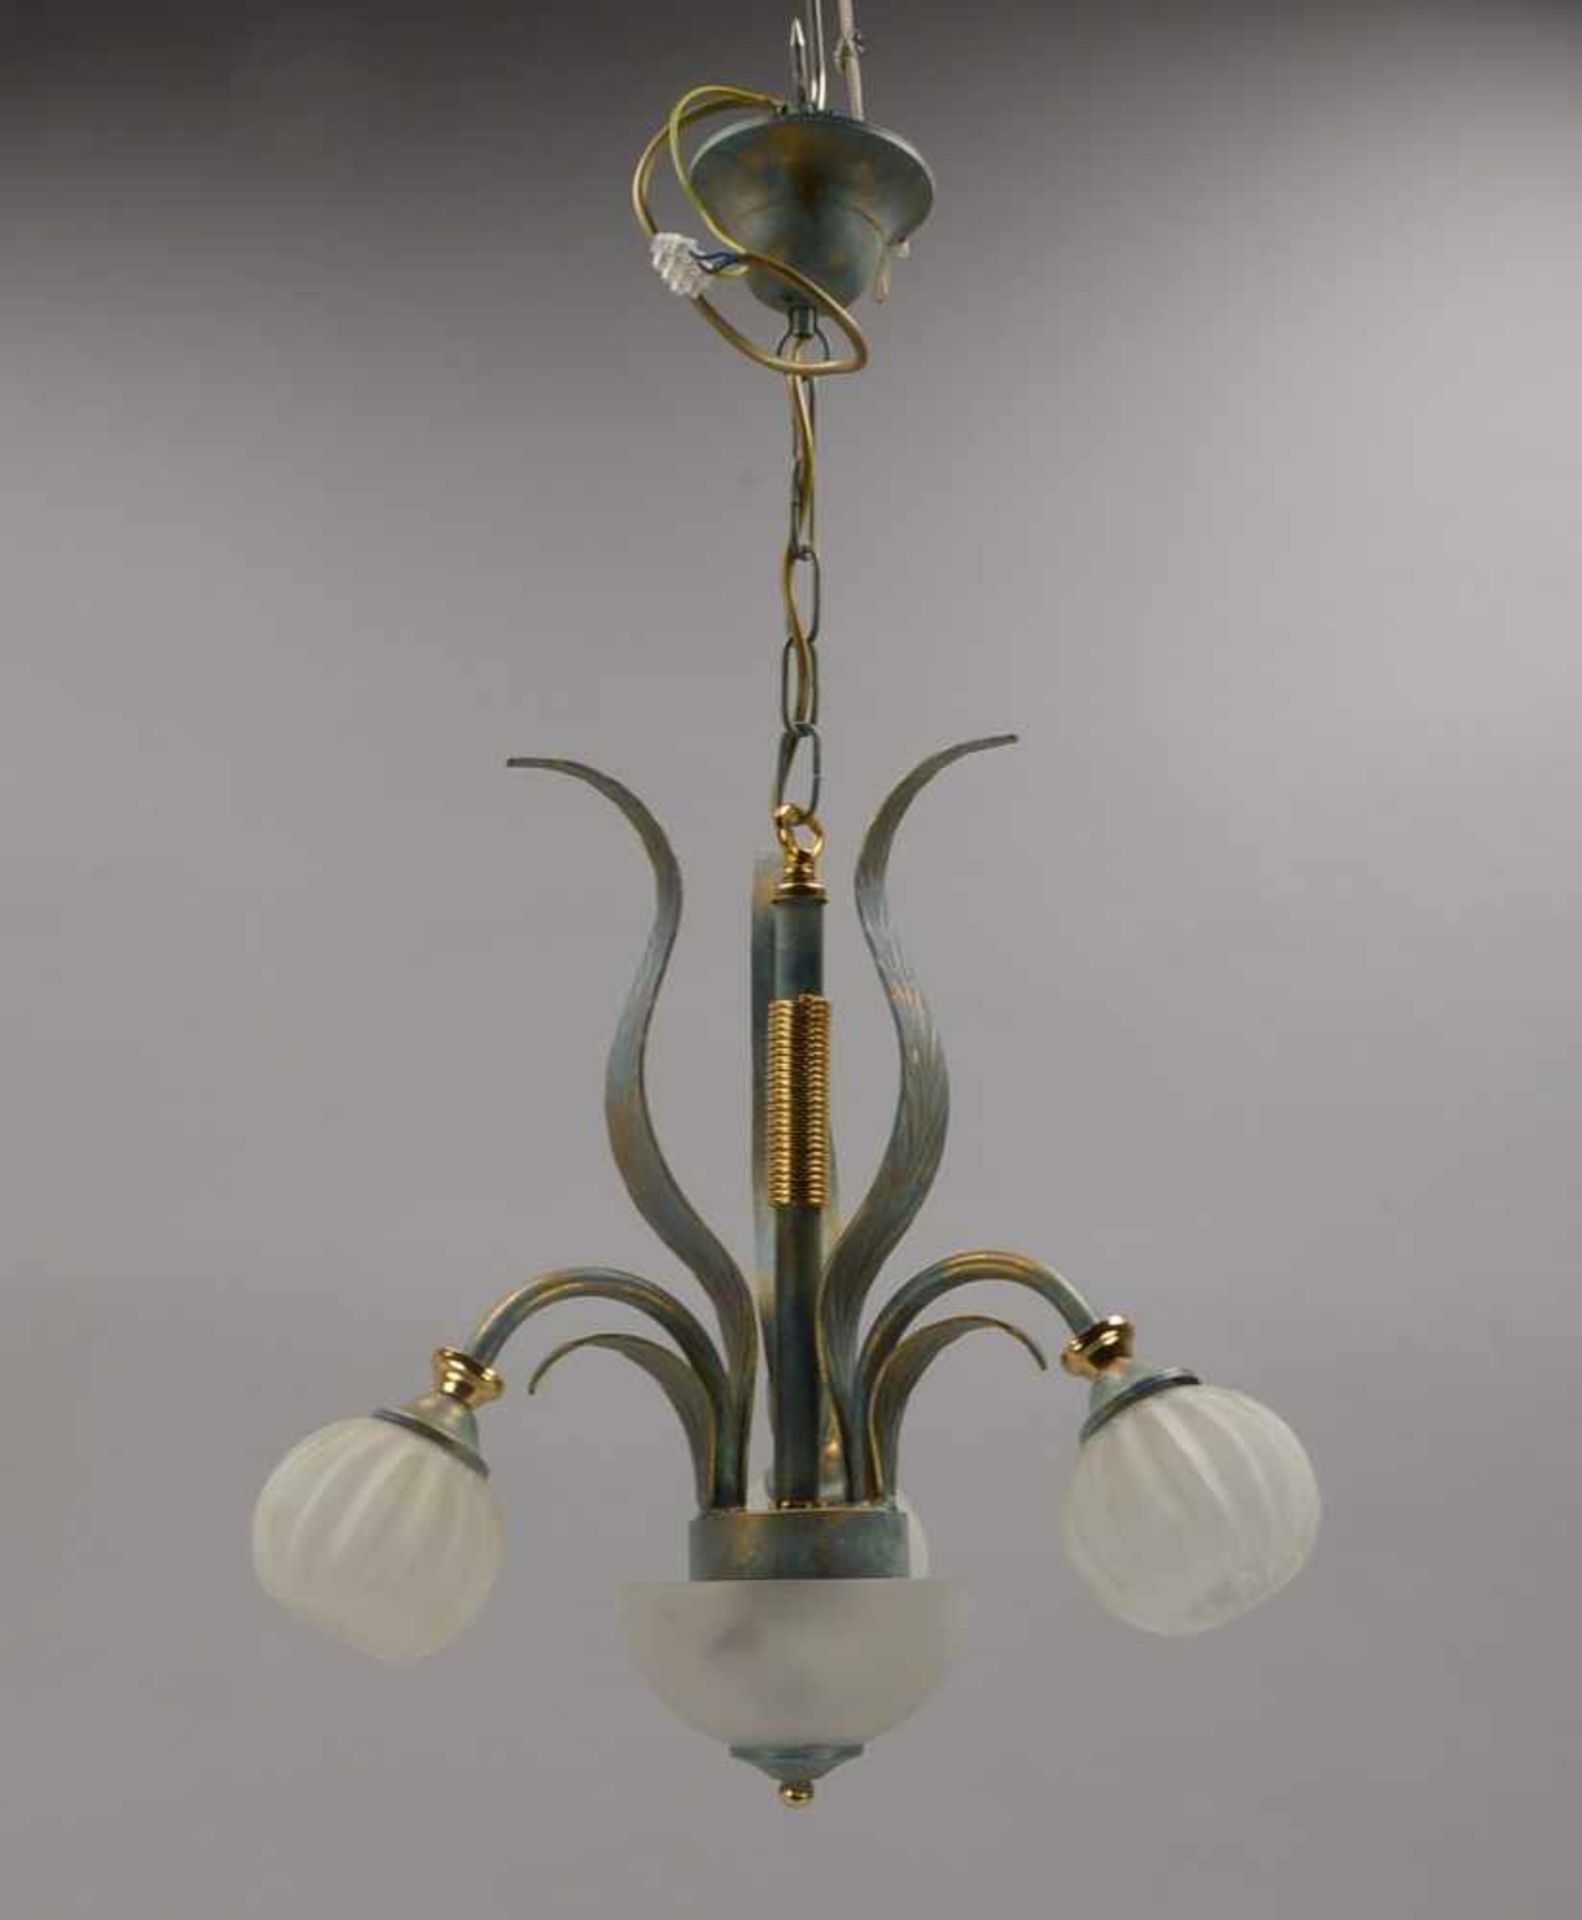 Deckenlampe, 5-flammig, Metall/Messing, teils farbig staffiert, mit satiniertem Glas, - Bild 2 aus 2